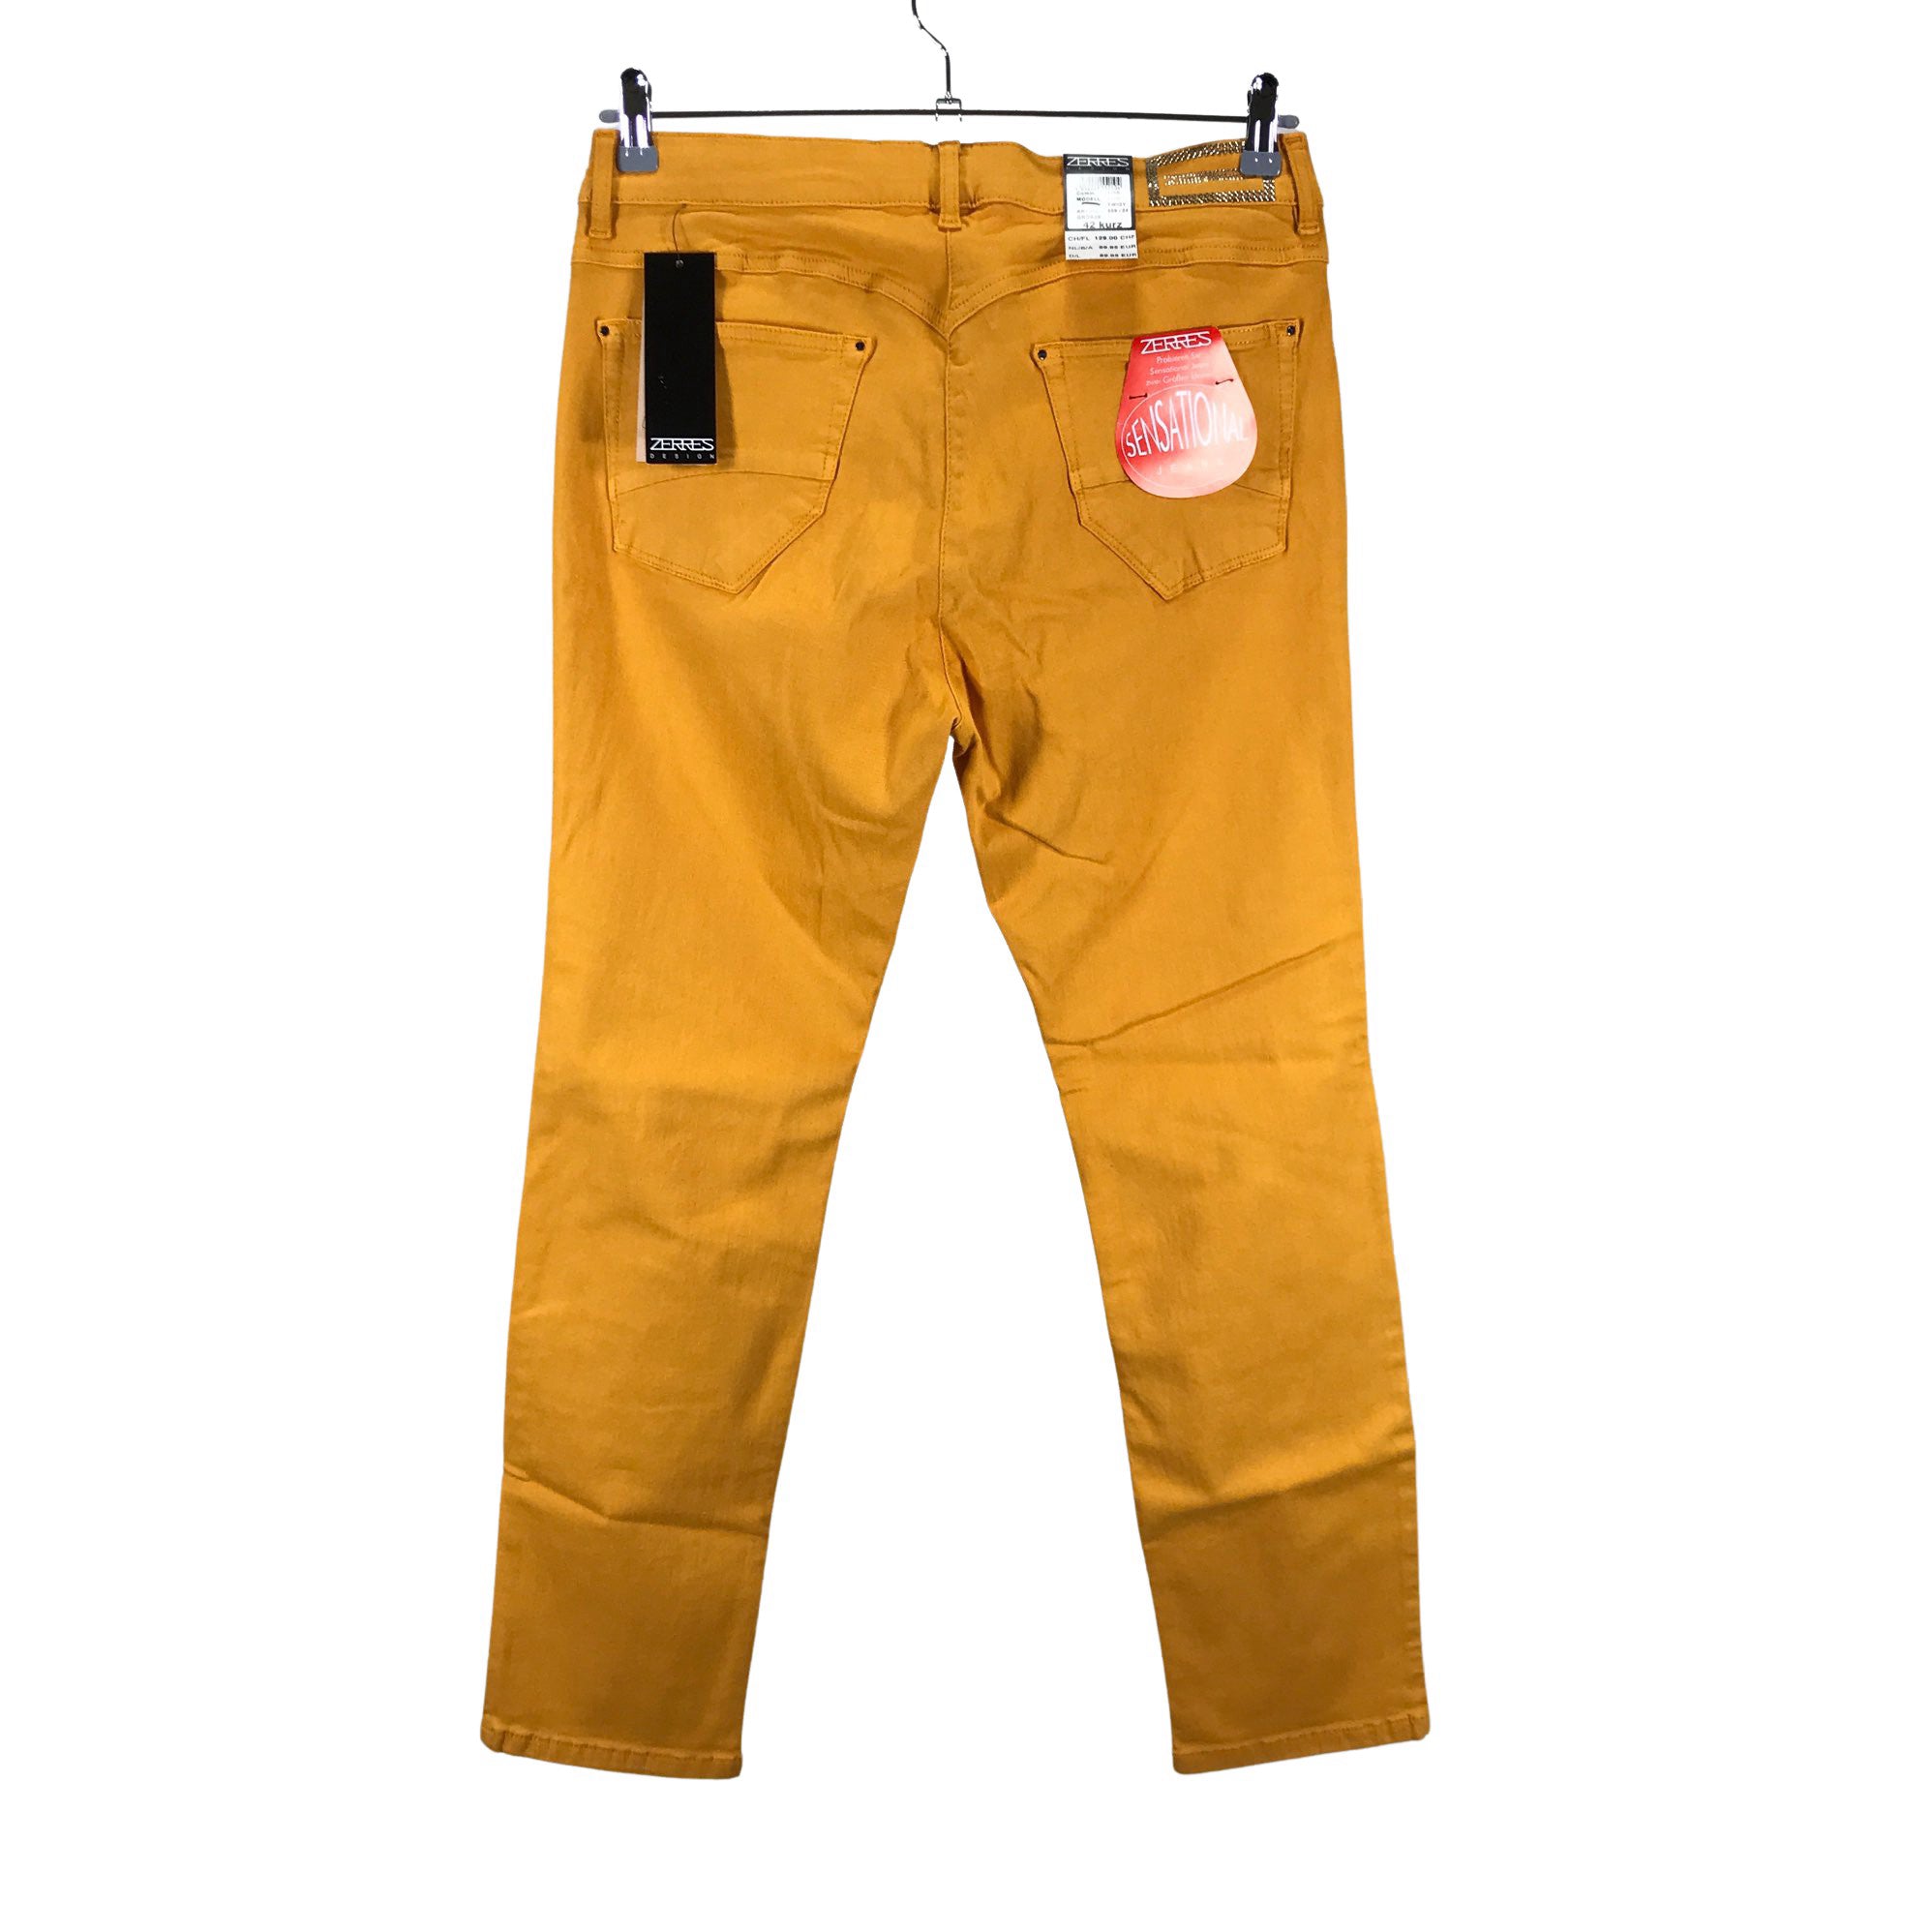 Zerres Jeans, size 42 (Yellow) |